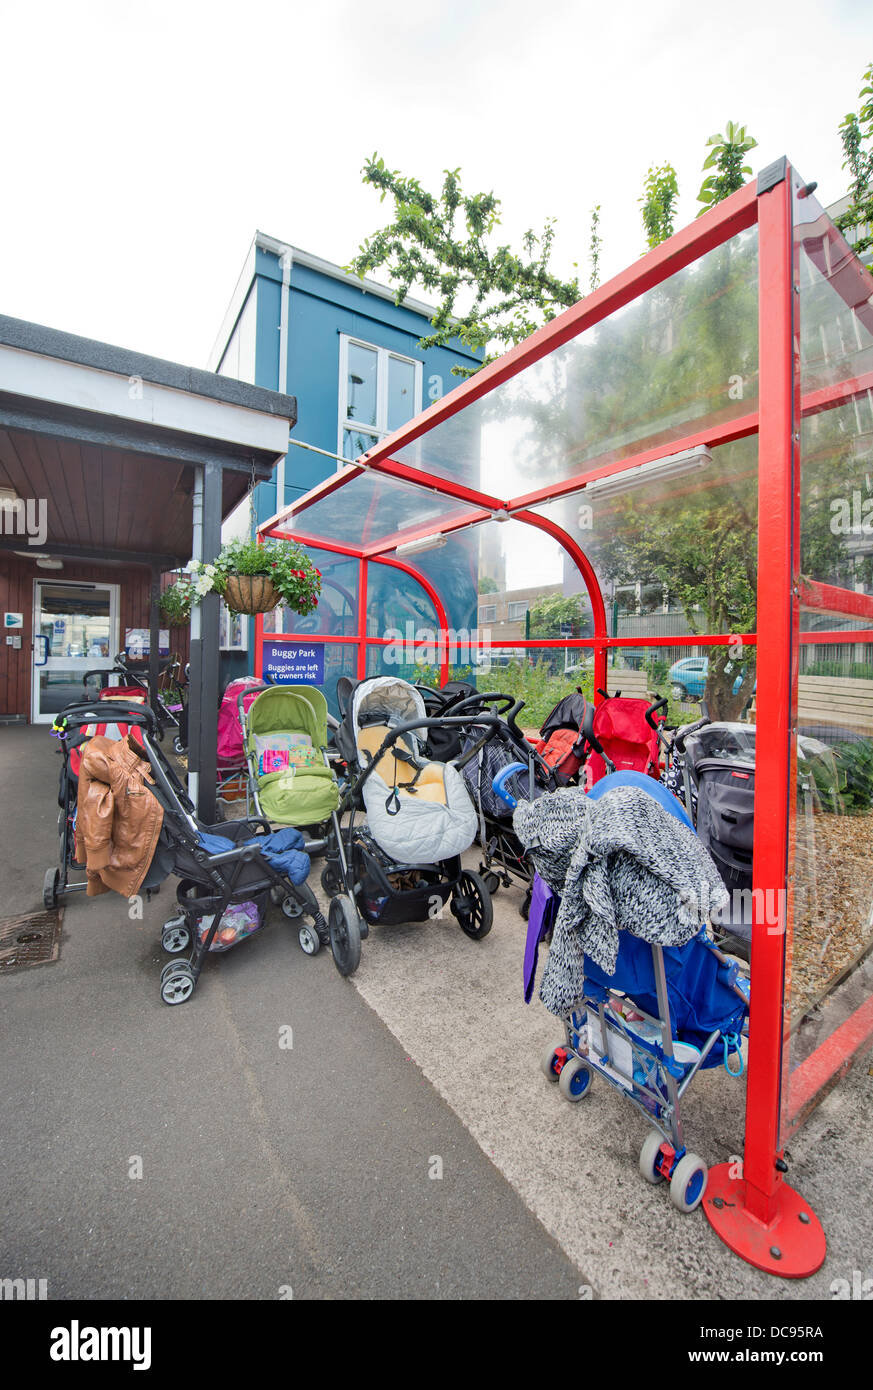 Un buggy park à St Pauls École maternelle et Children's Centre, Bristol UK Banque D'Images